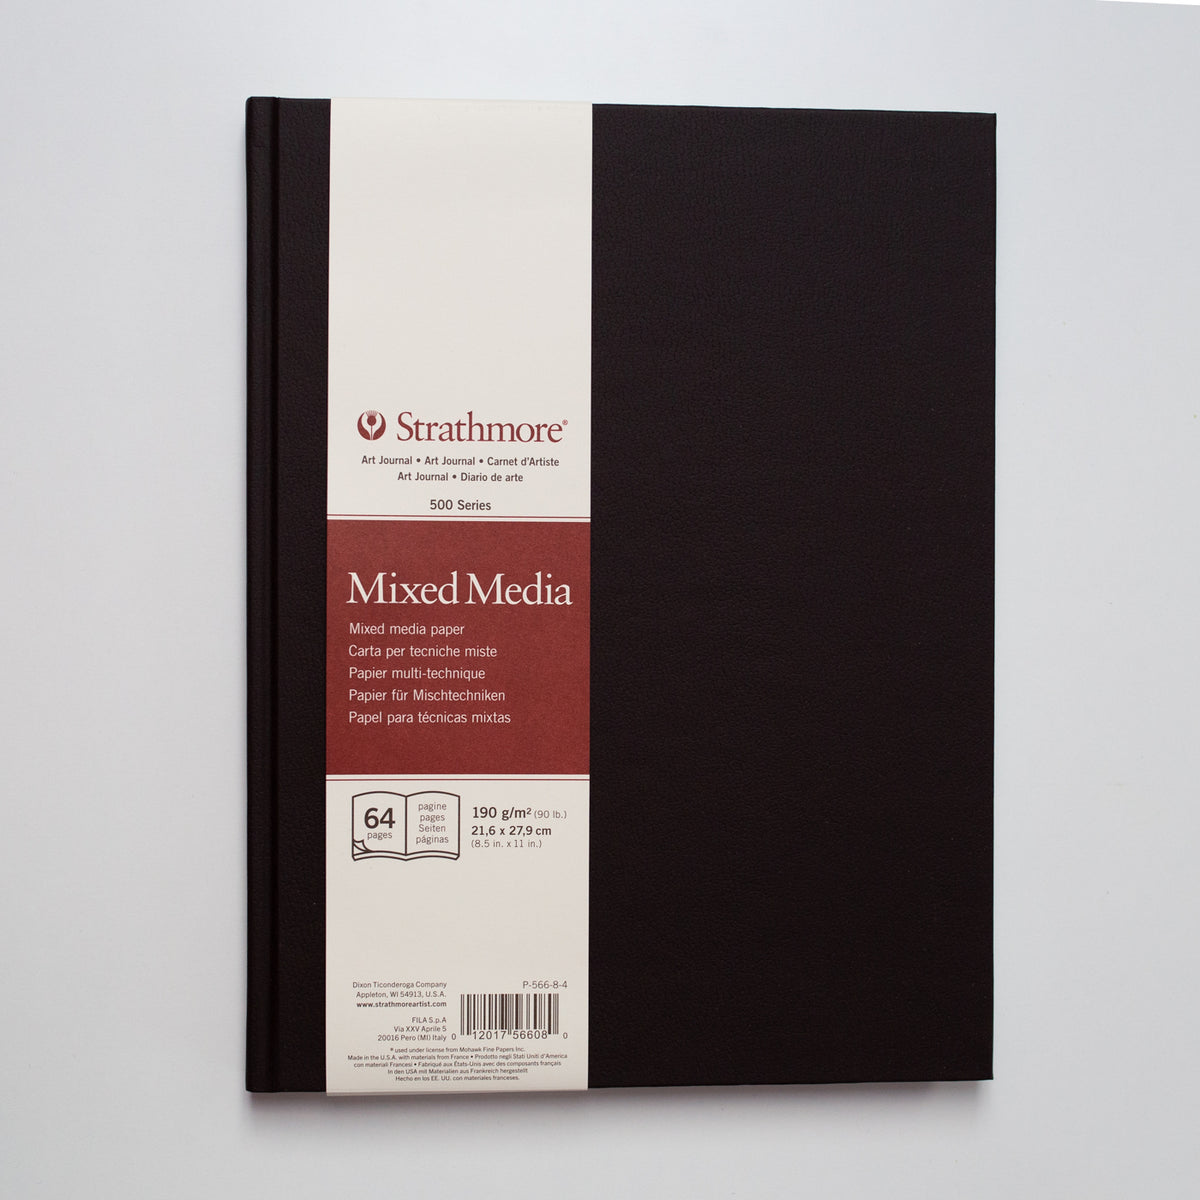 Strathmore 500 Mixed Media Journal 22x28cm 190g